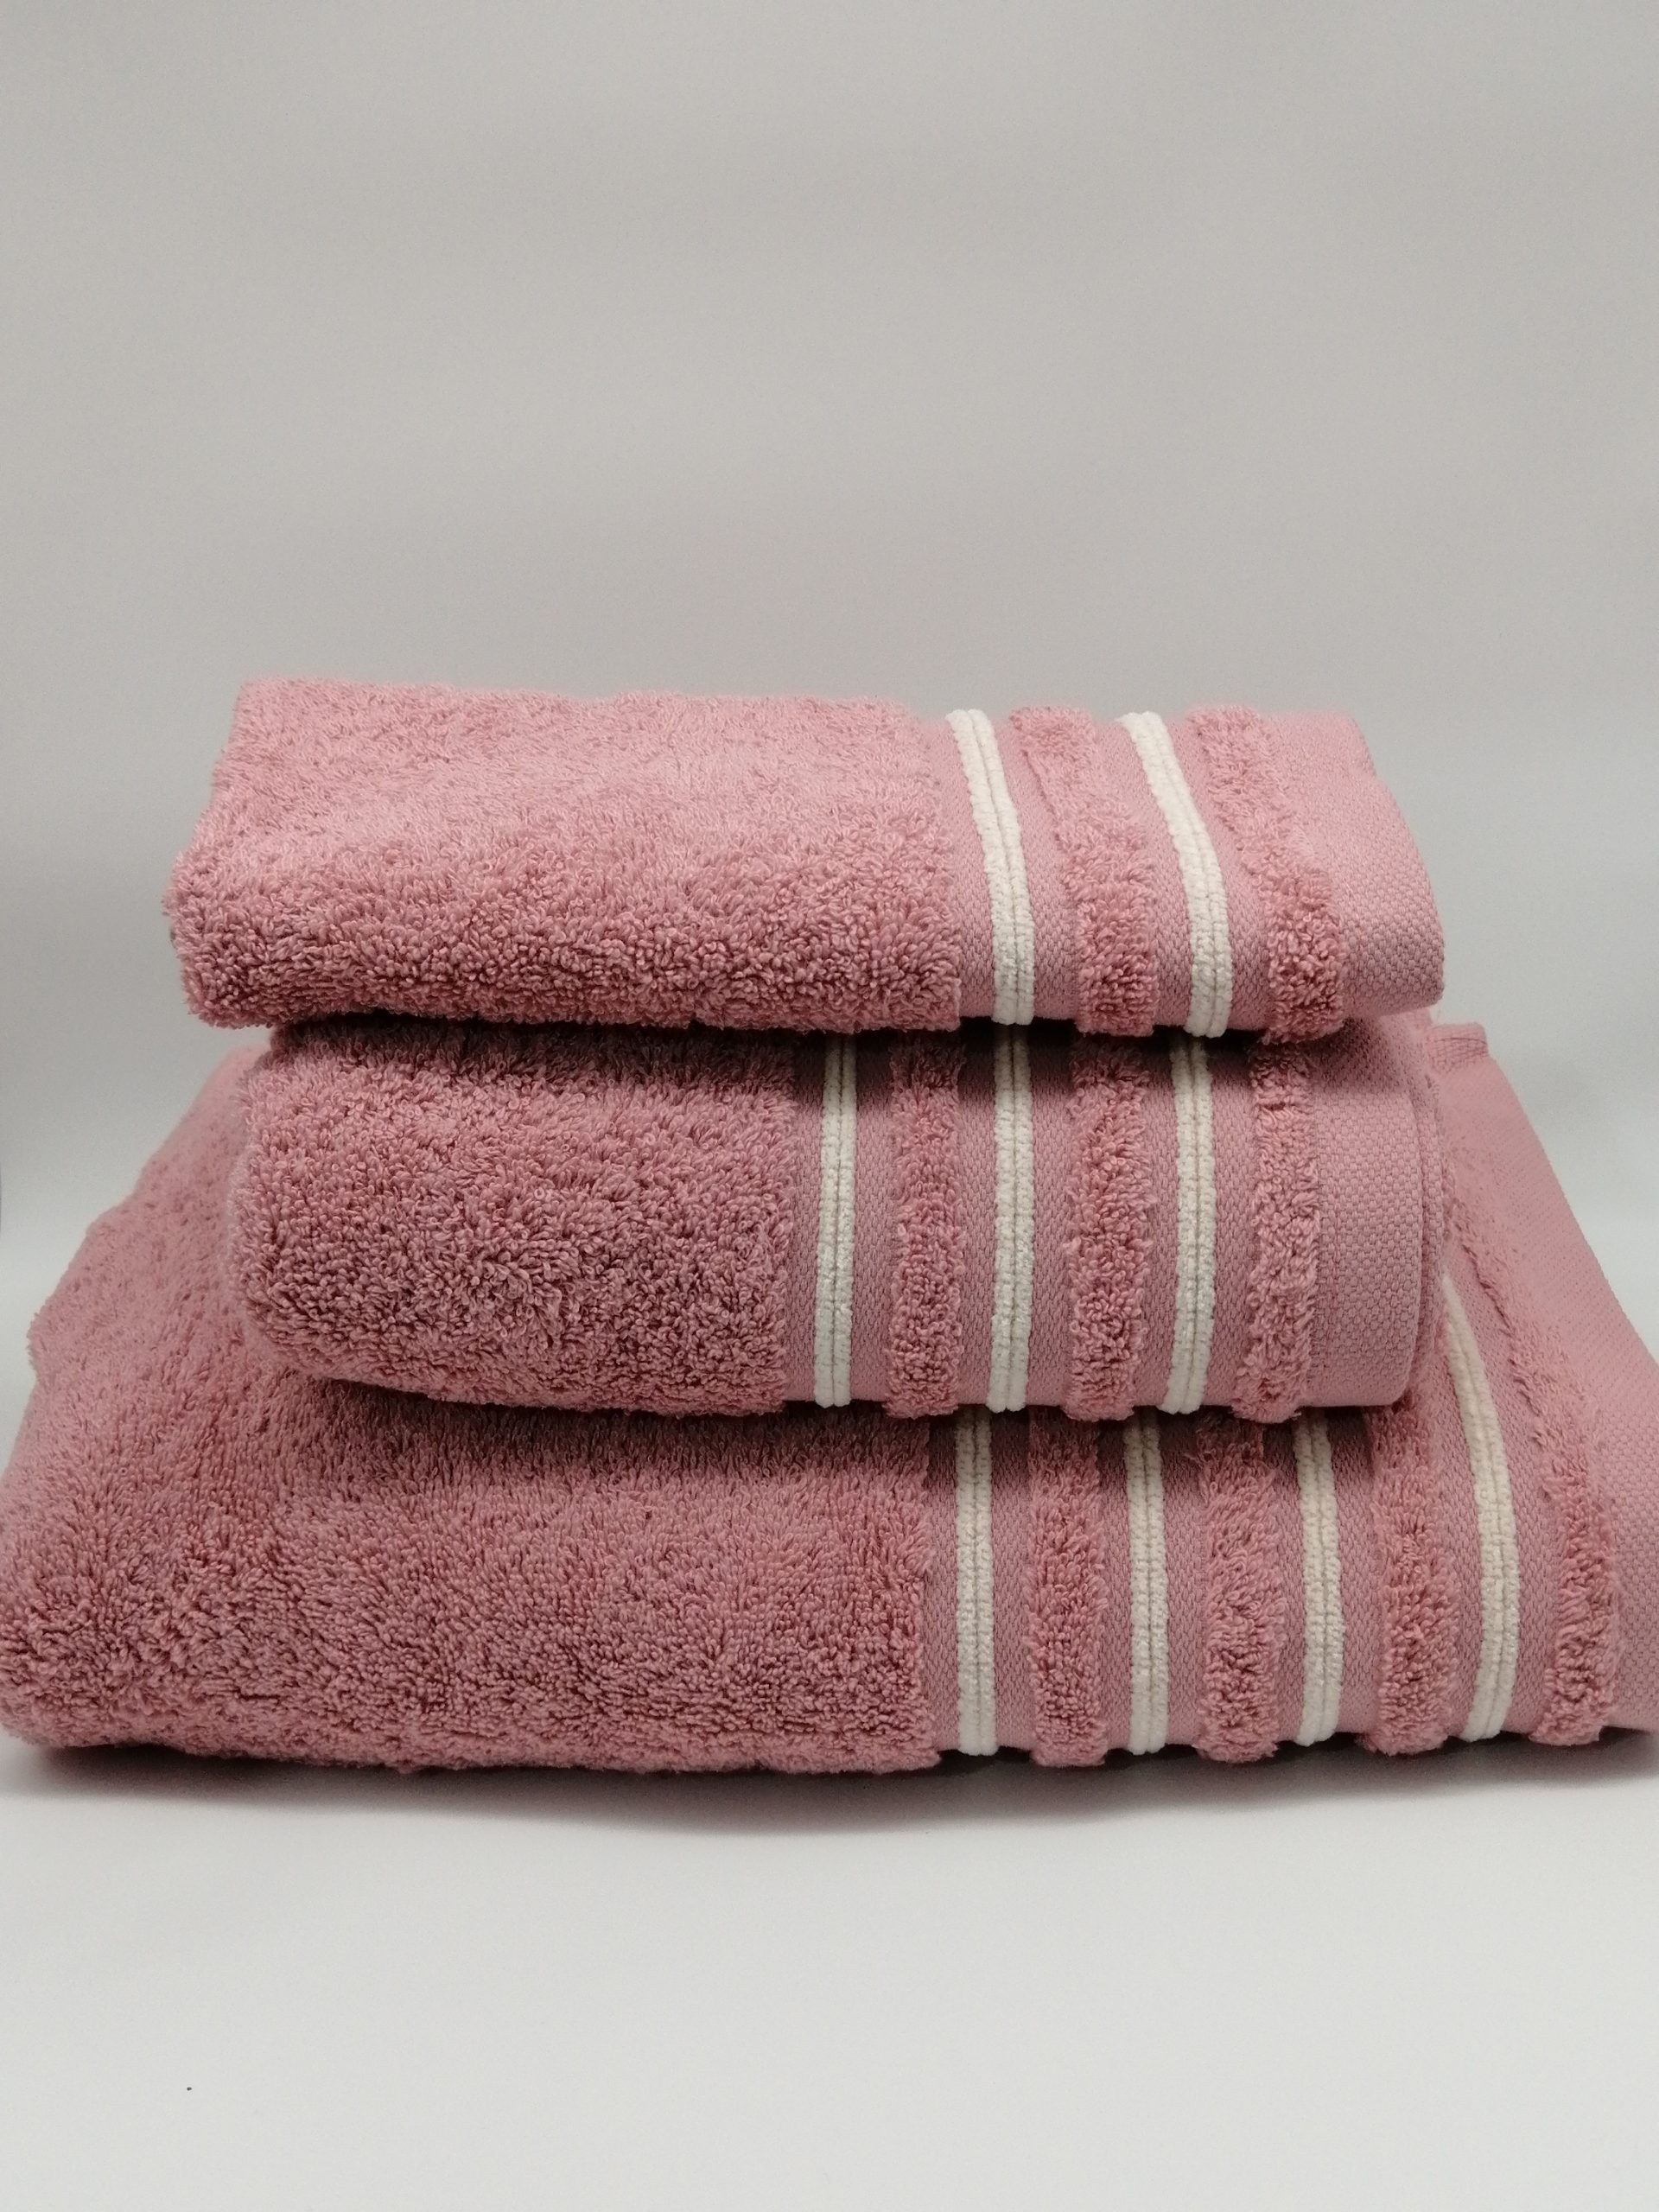 Juego de toallas Rosa - Tienda Lartextil